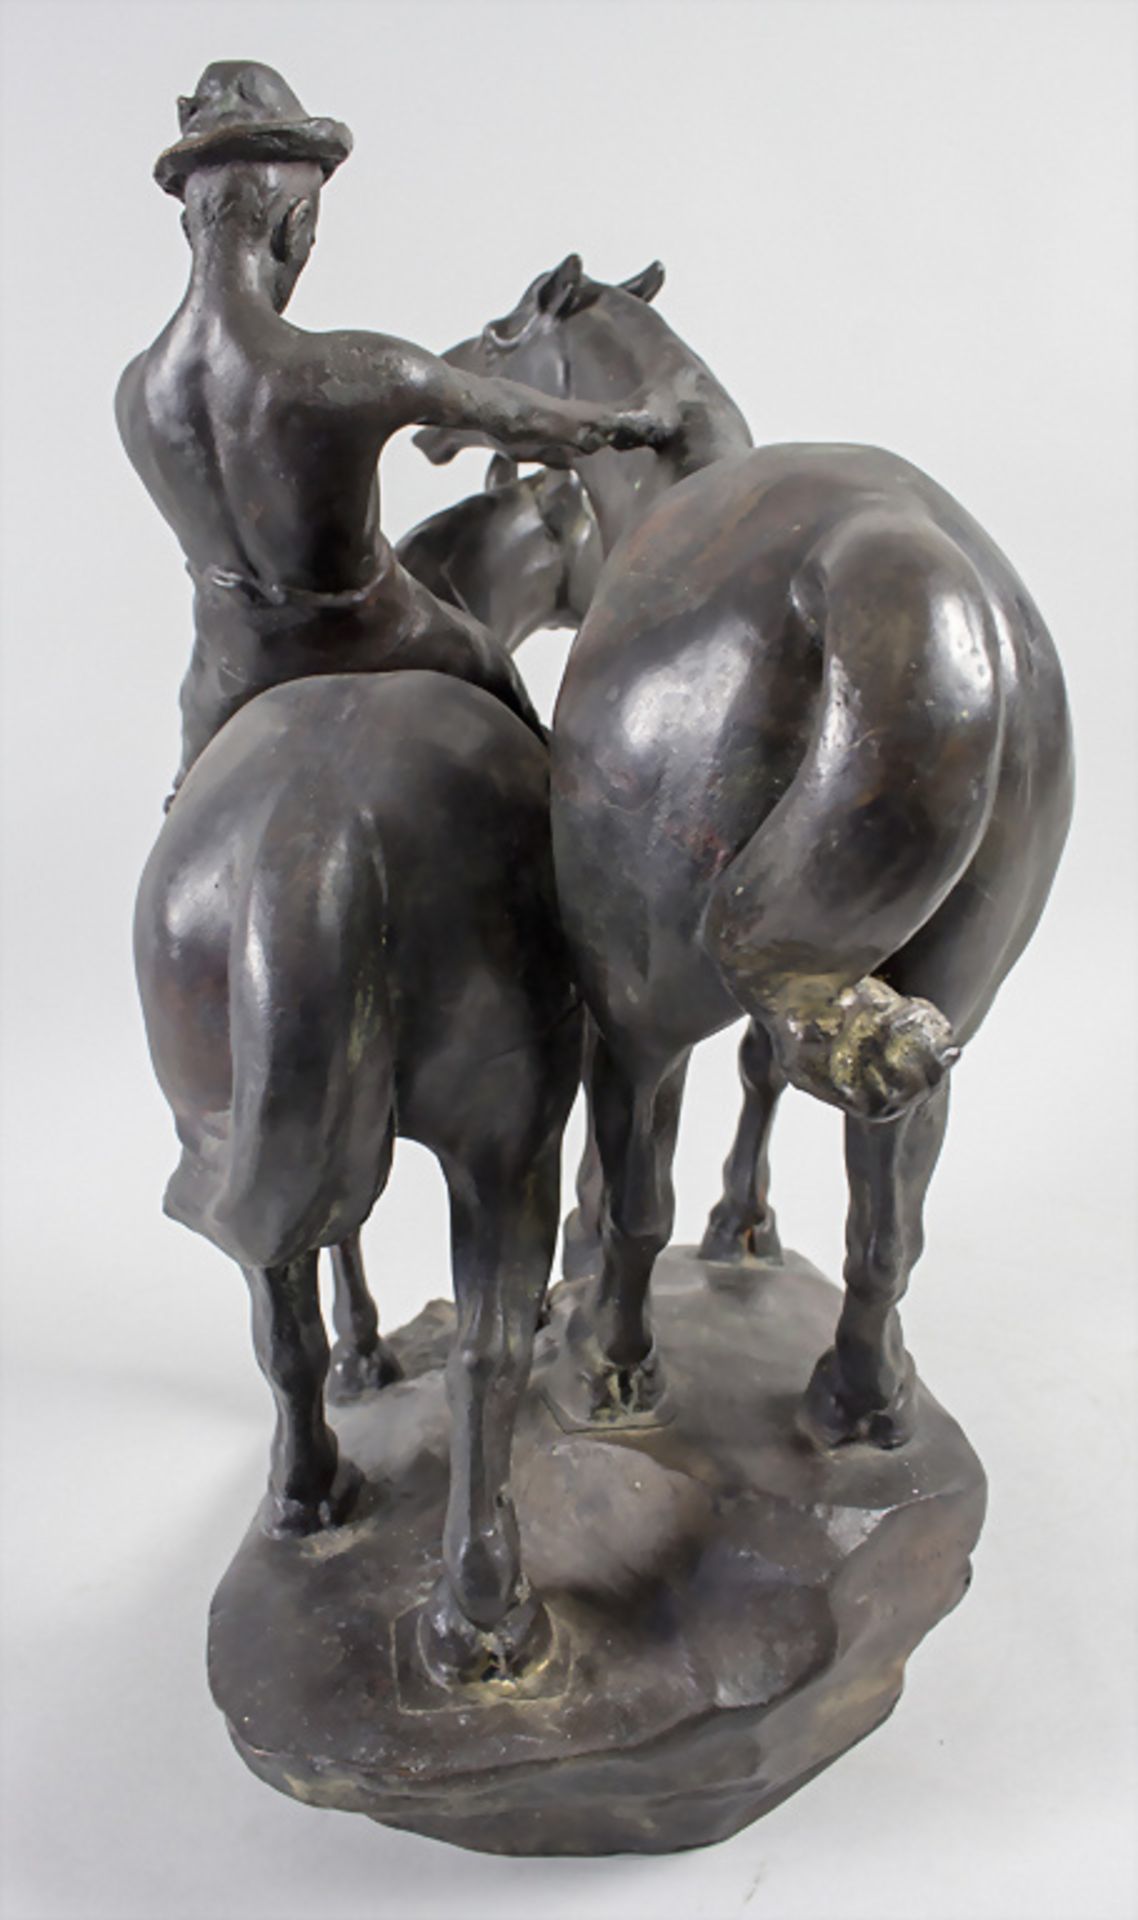 Leonhard Zeiher, 'Junge mit zwei Pferden' / 'A boy with two horses', Berlin, um 1910 - Bild 3 aus 10